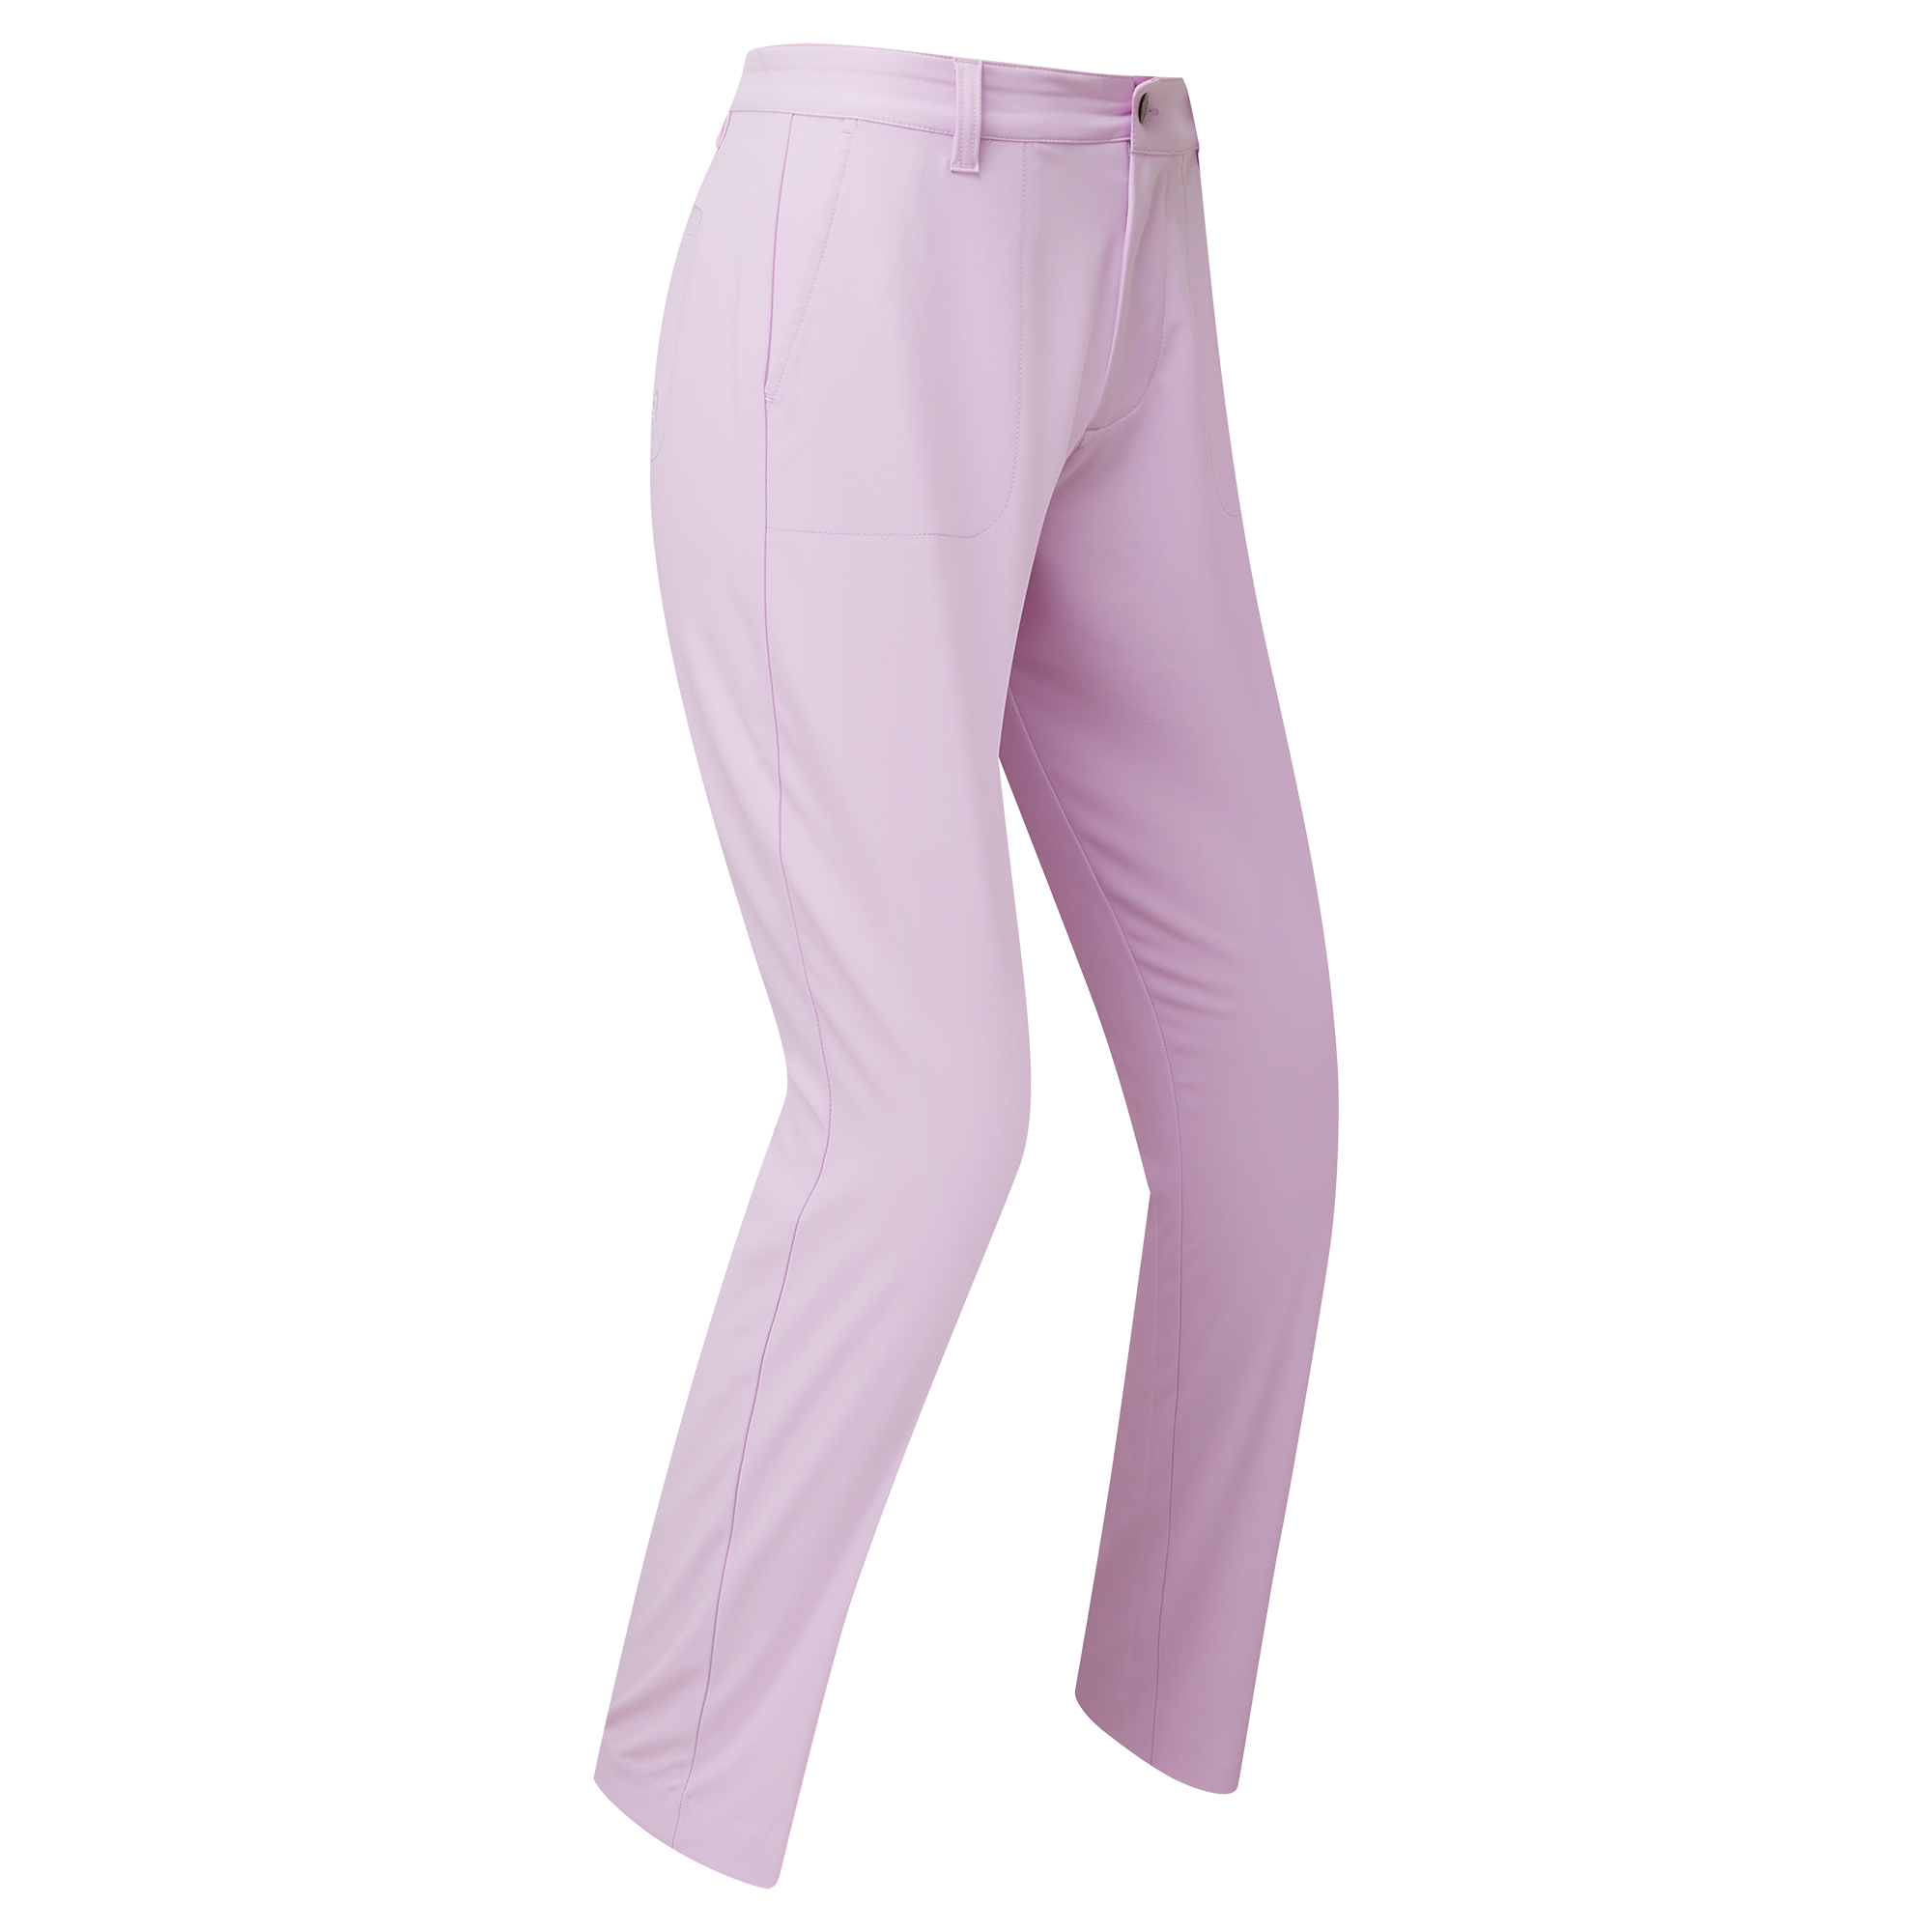 FootJoy Stretch Cropped dámské golfové kalhoty, světle fialové, vel. S